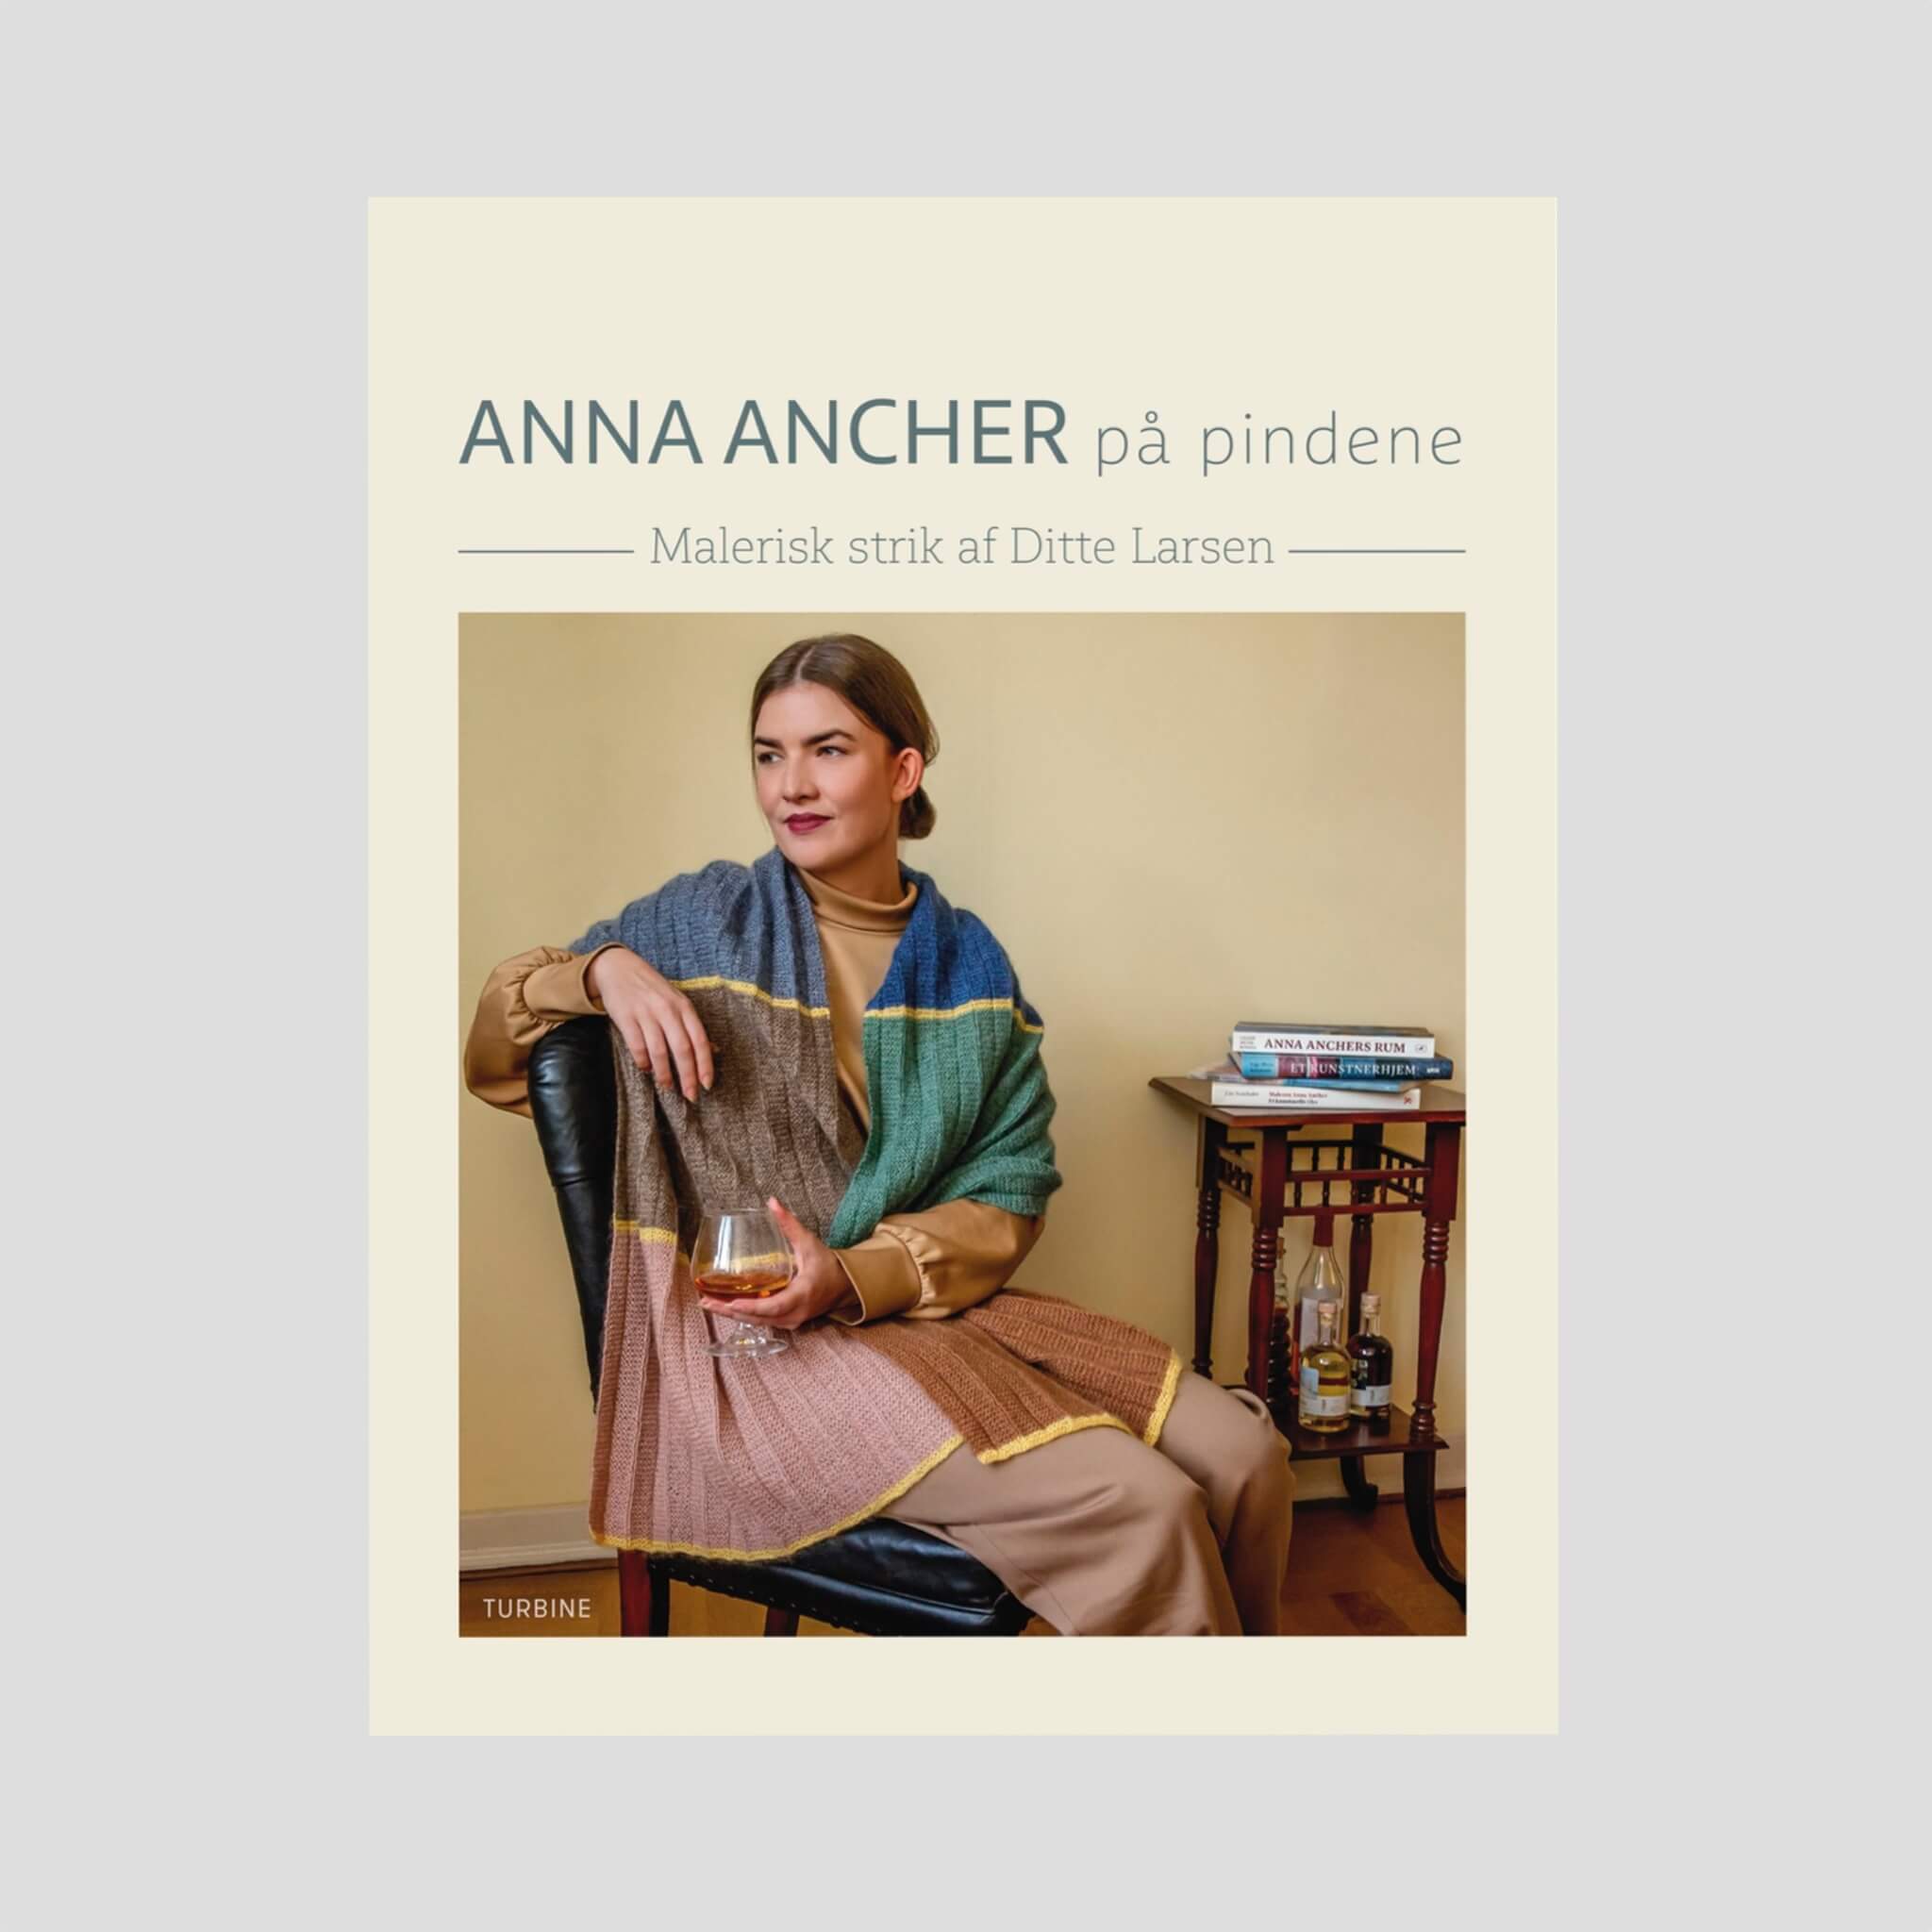 Anna Ancher på pinnarna